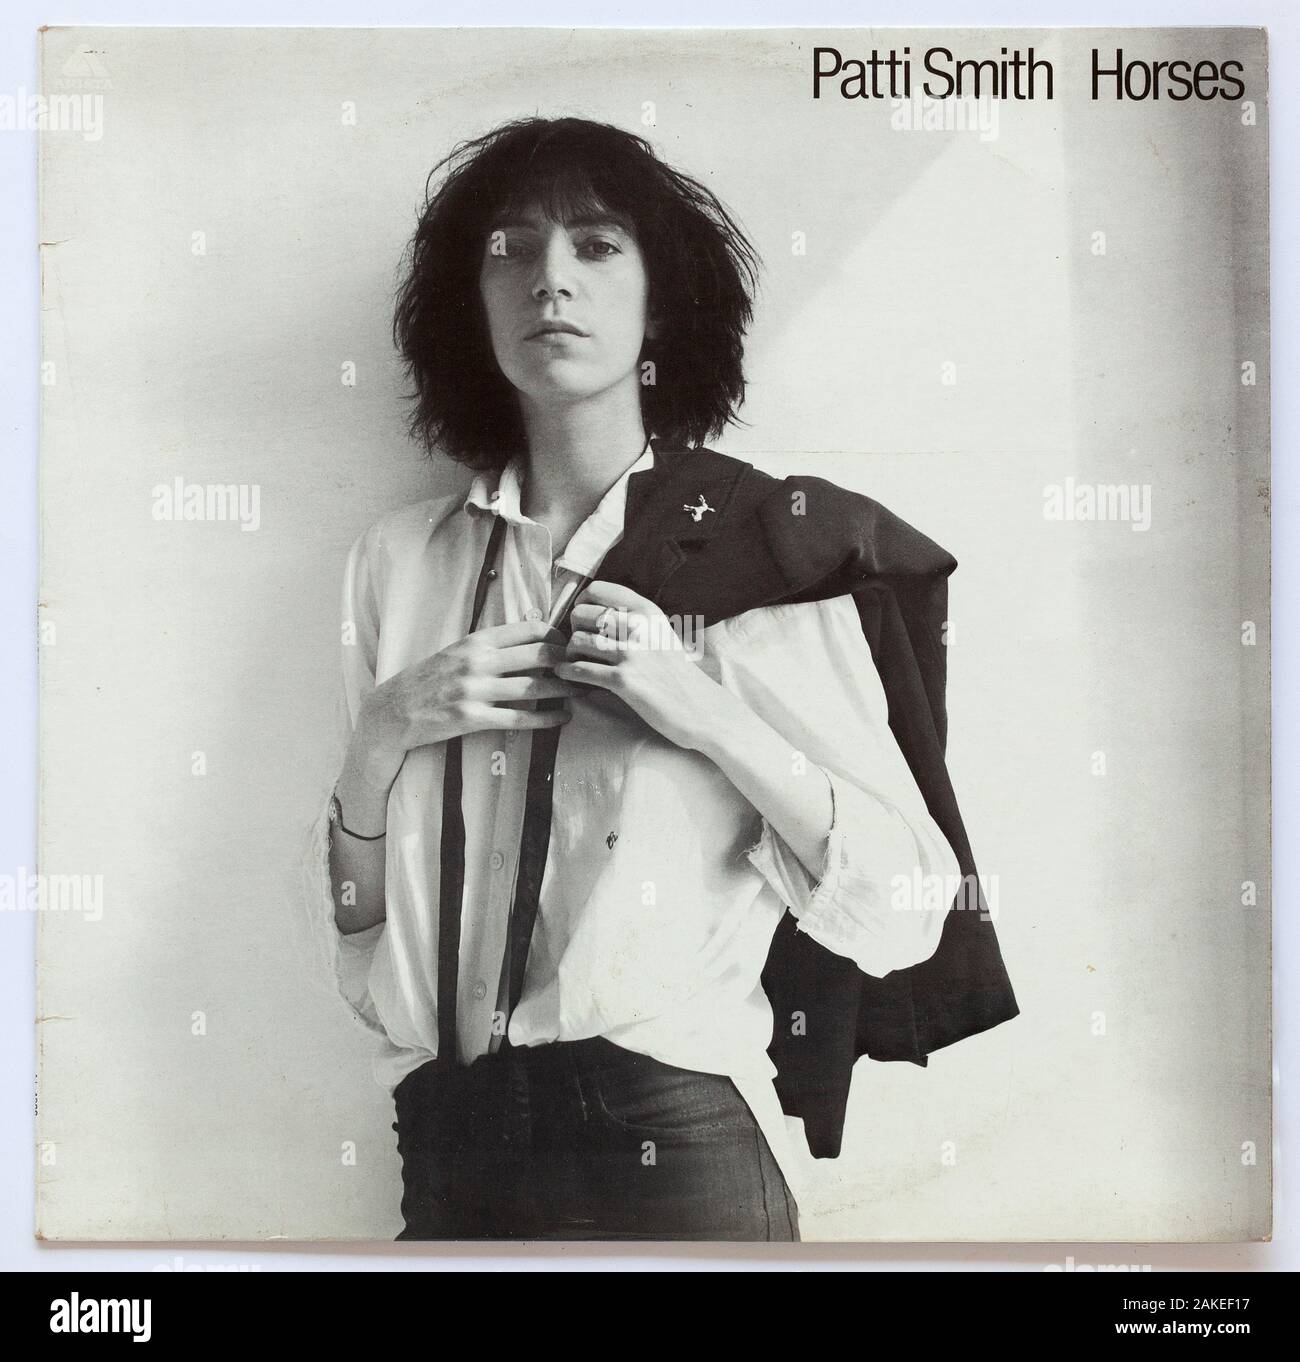 La couverture de Horses, 1975 album de Patti Smith sur Arista usage éditorial seulement Banque D'Images